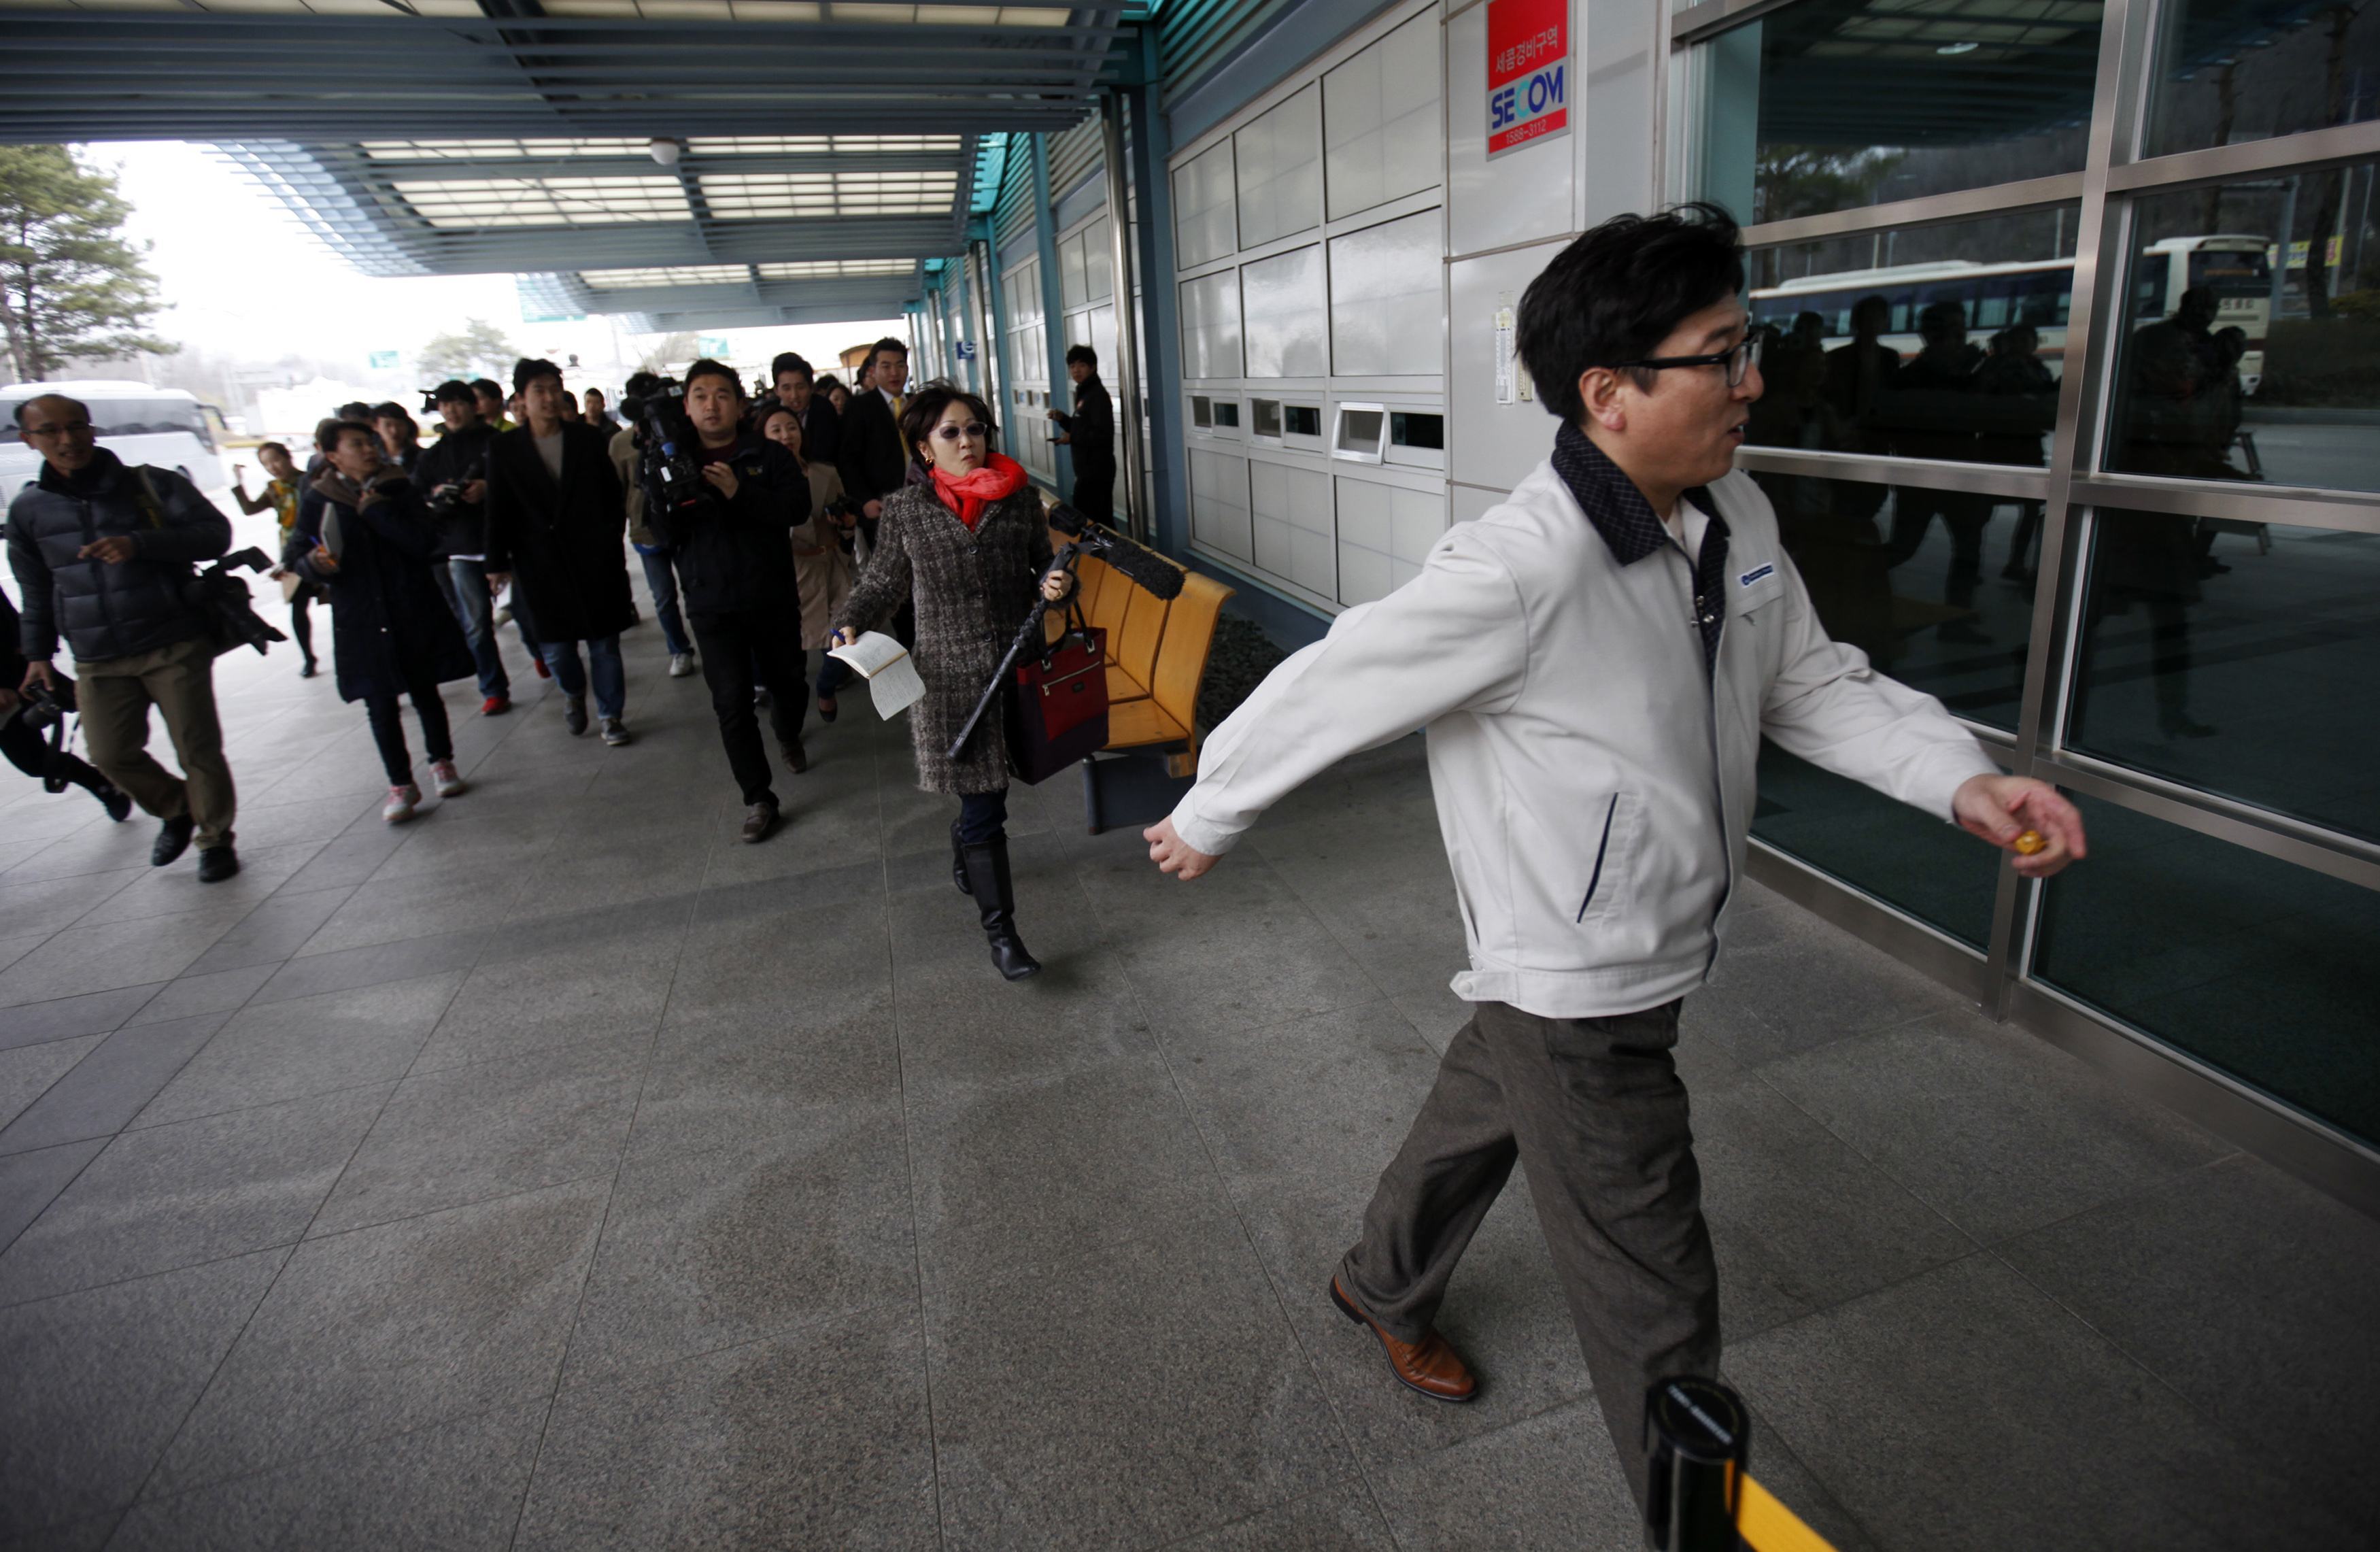 Β. Κορέα: Αποσύρει 53.000 εργαζόμενους από το πάρκο Κεσόνγκ!